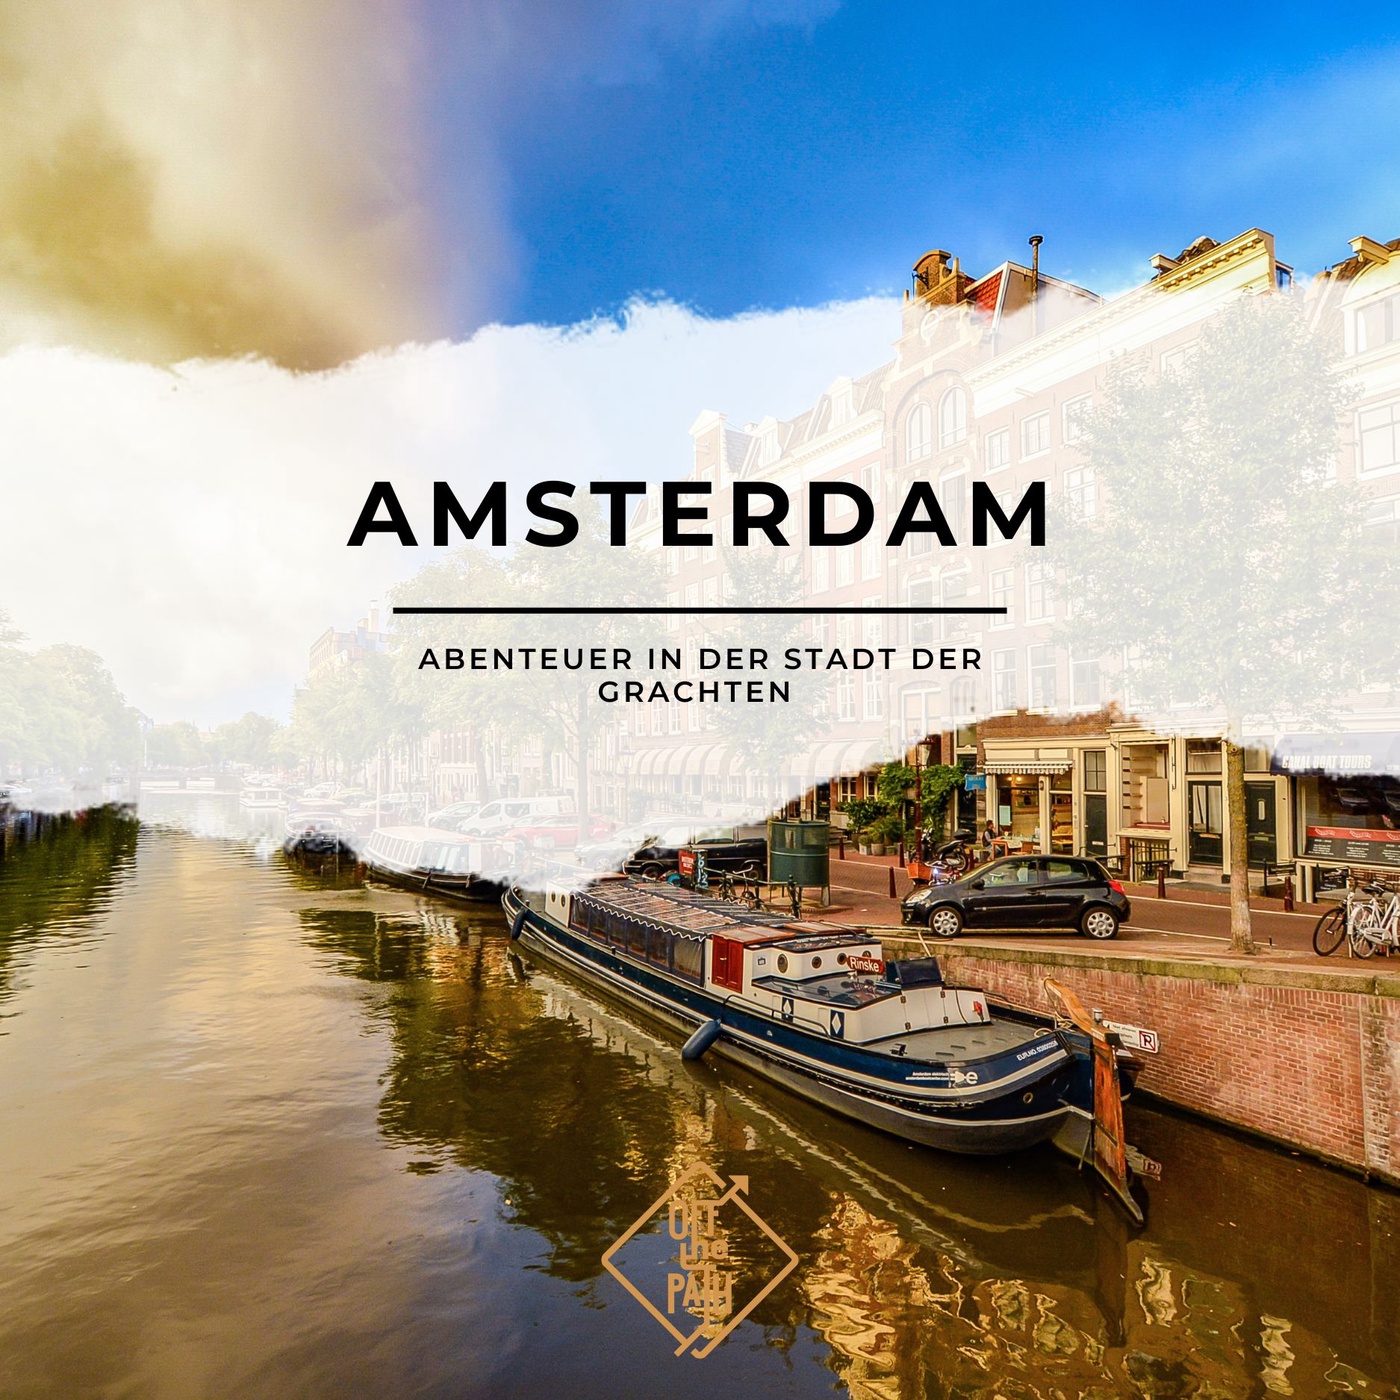 Abenteuer in der Stadt der Grachten - Amsterdam (Teil 2/2)